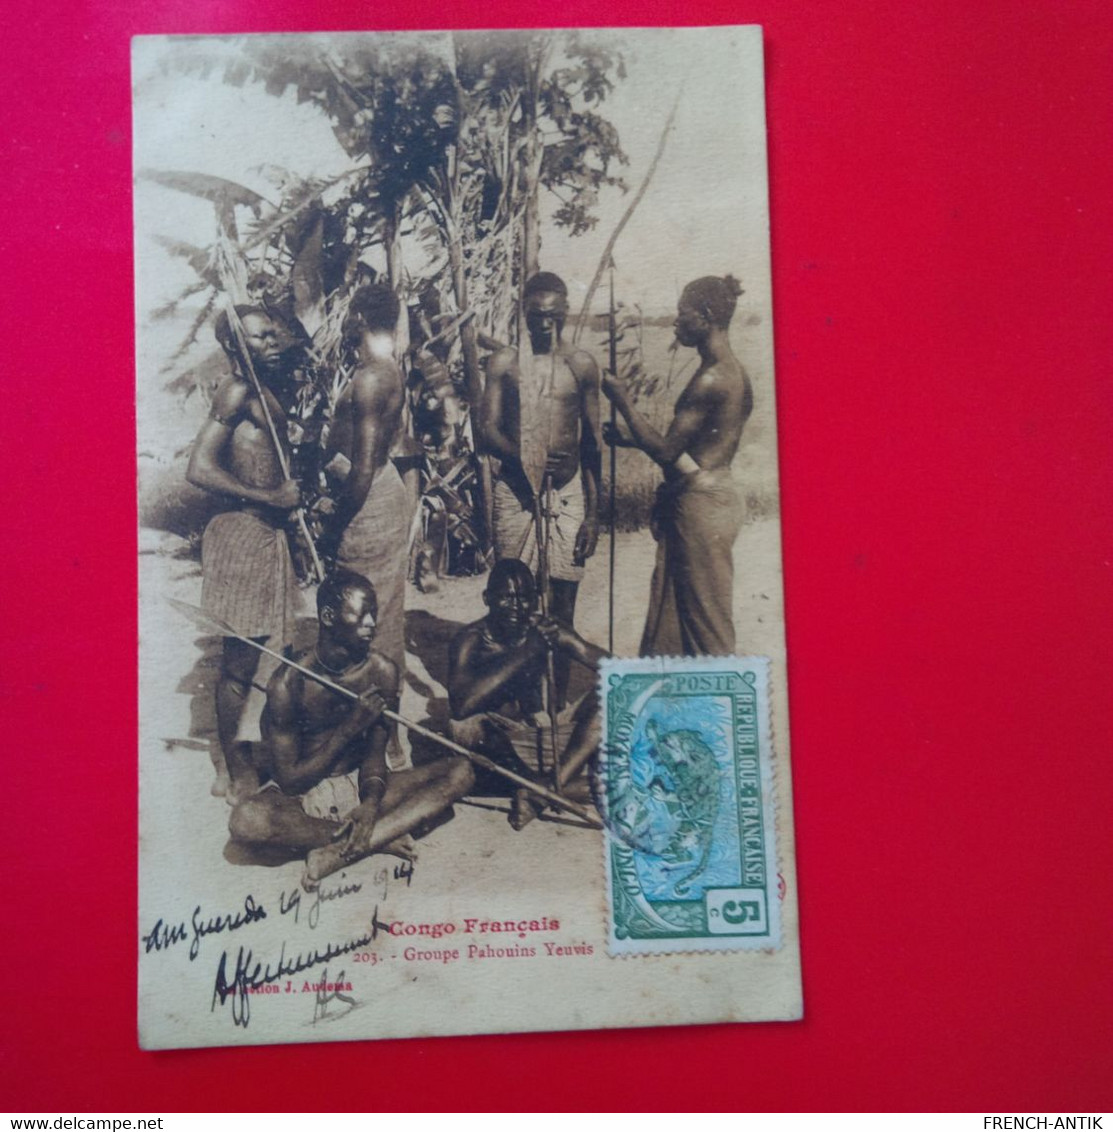 CONGO FRANCAIS GROUPE PAHOUINS YEUVIS - Congo Français